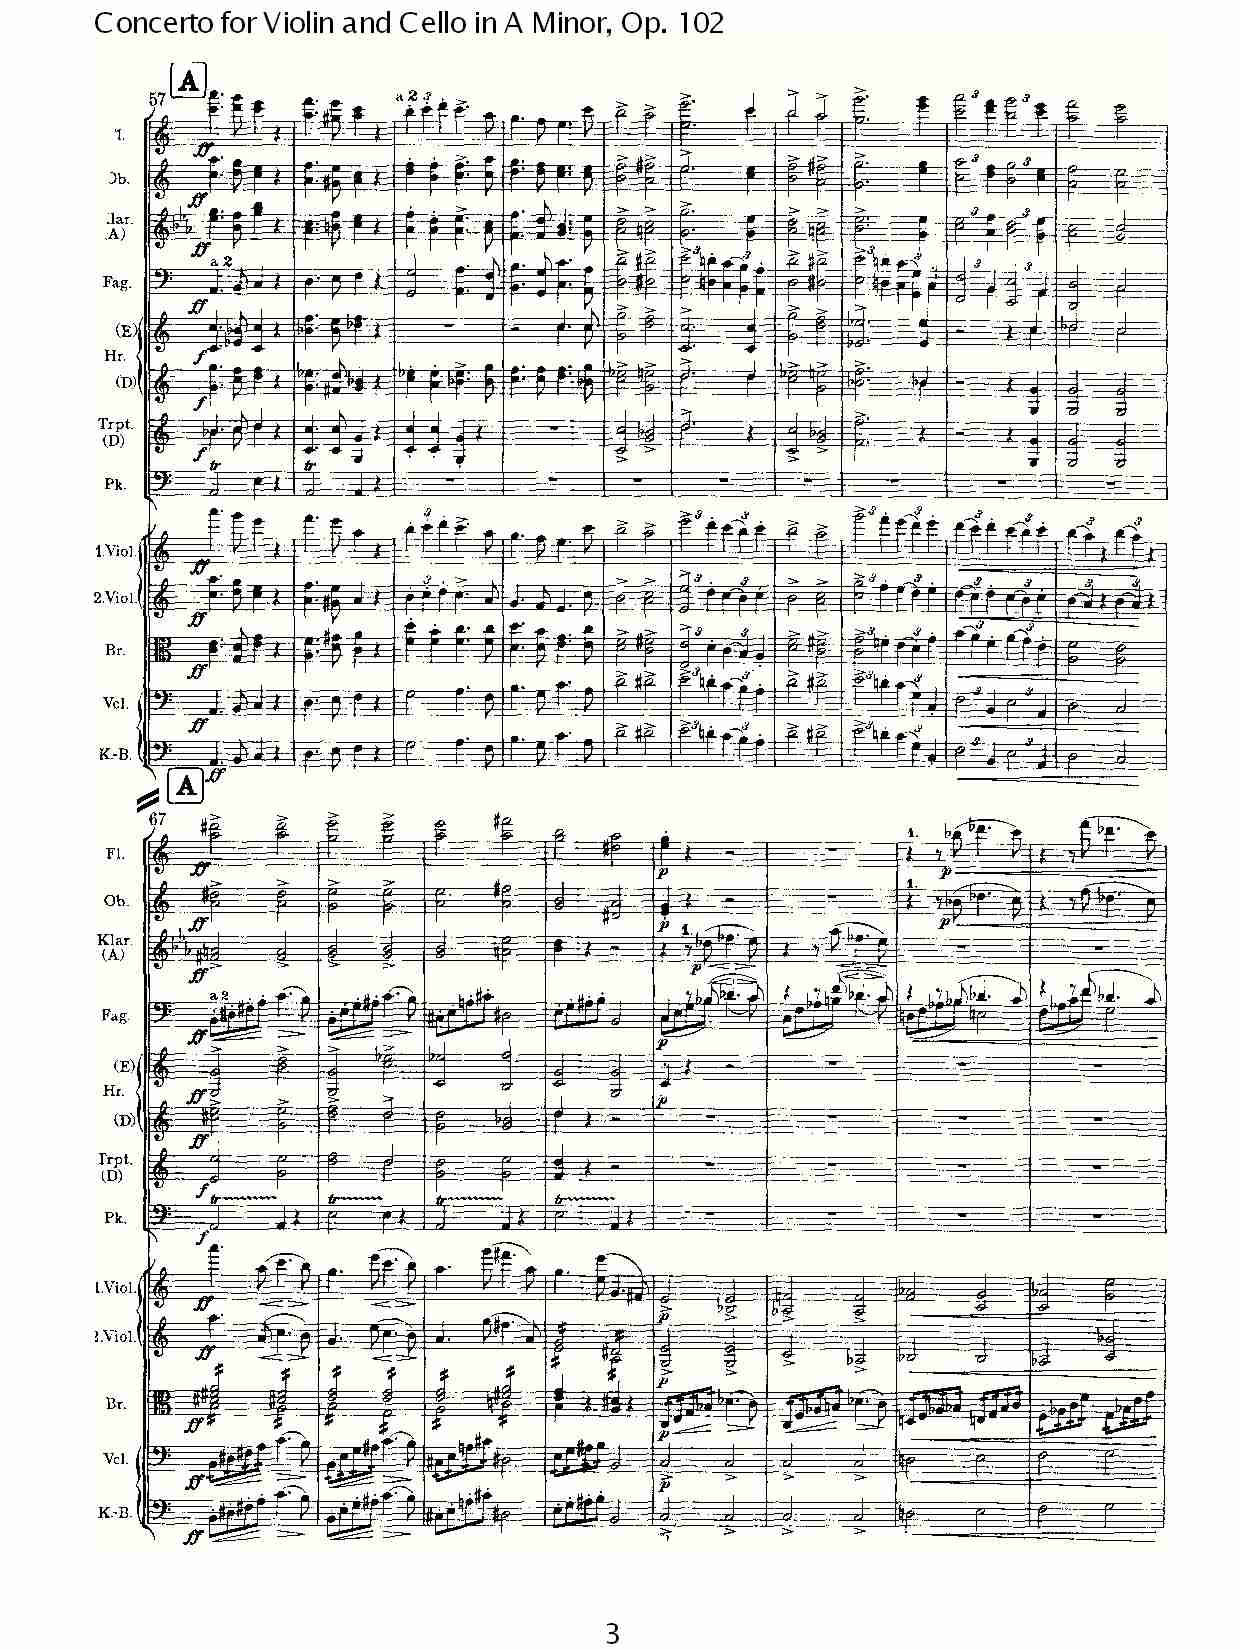 A小调小提琴与大提琴协奏曲, Op.102第一乐章（一）总谱（图4）